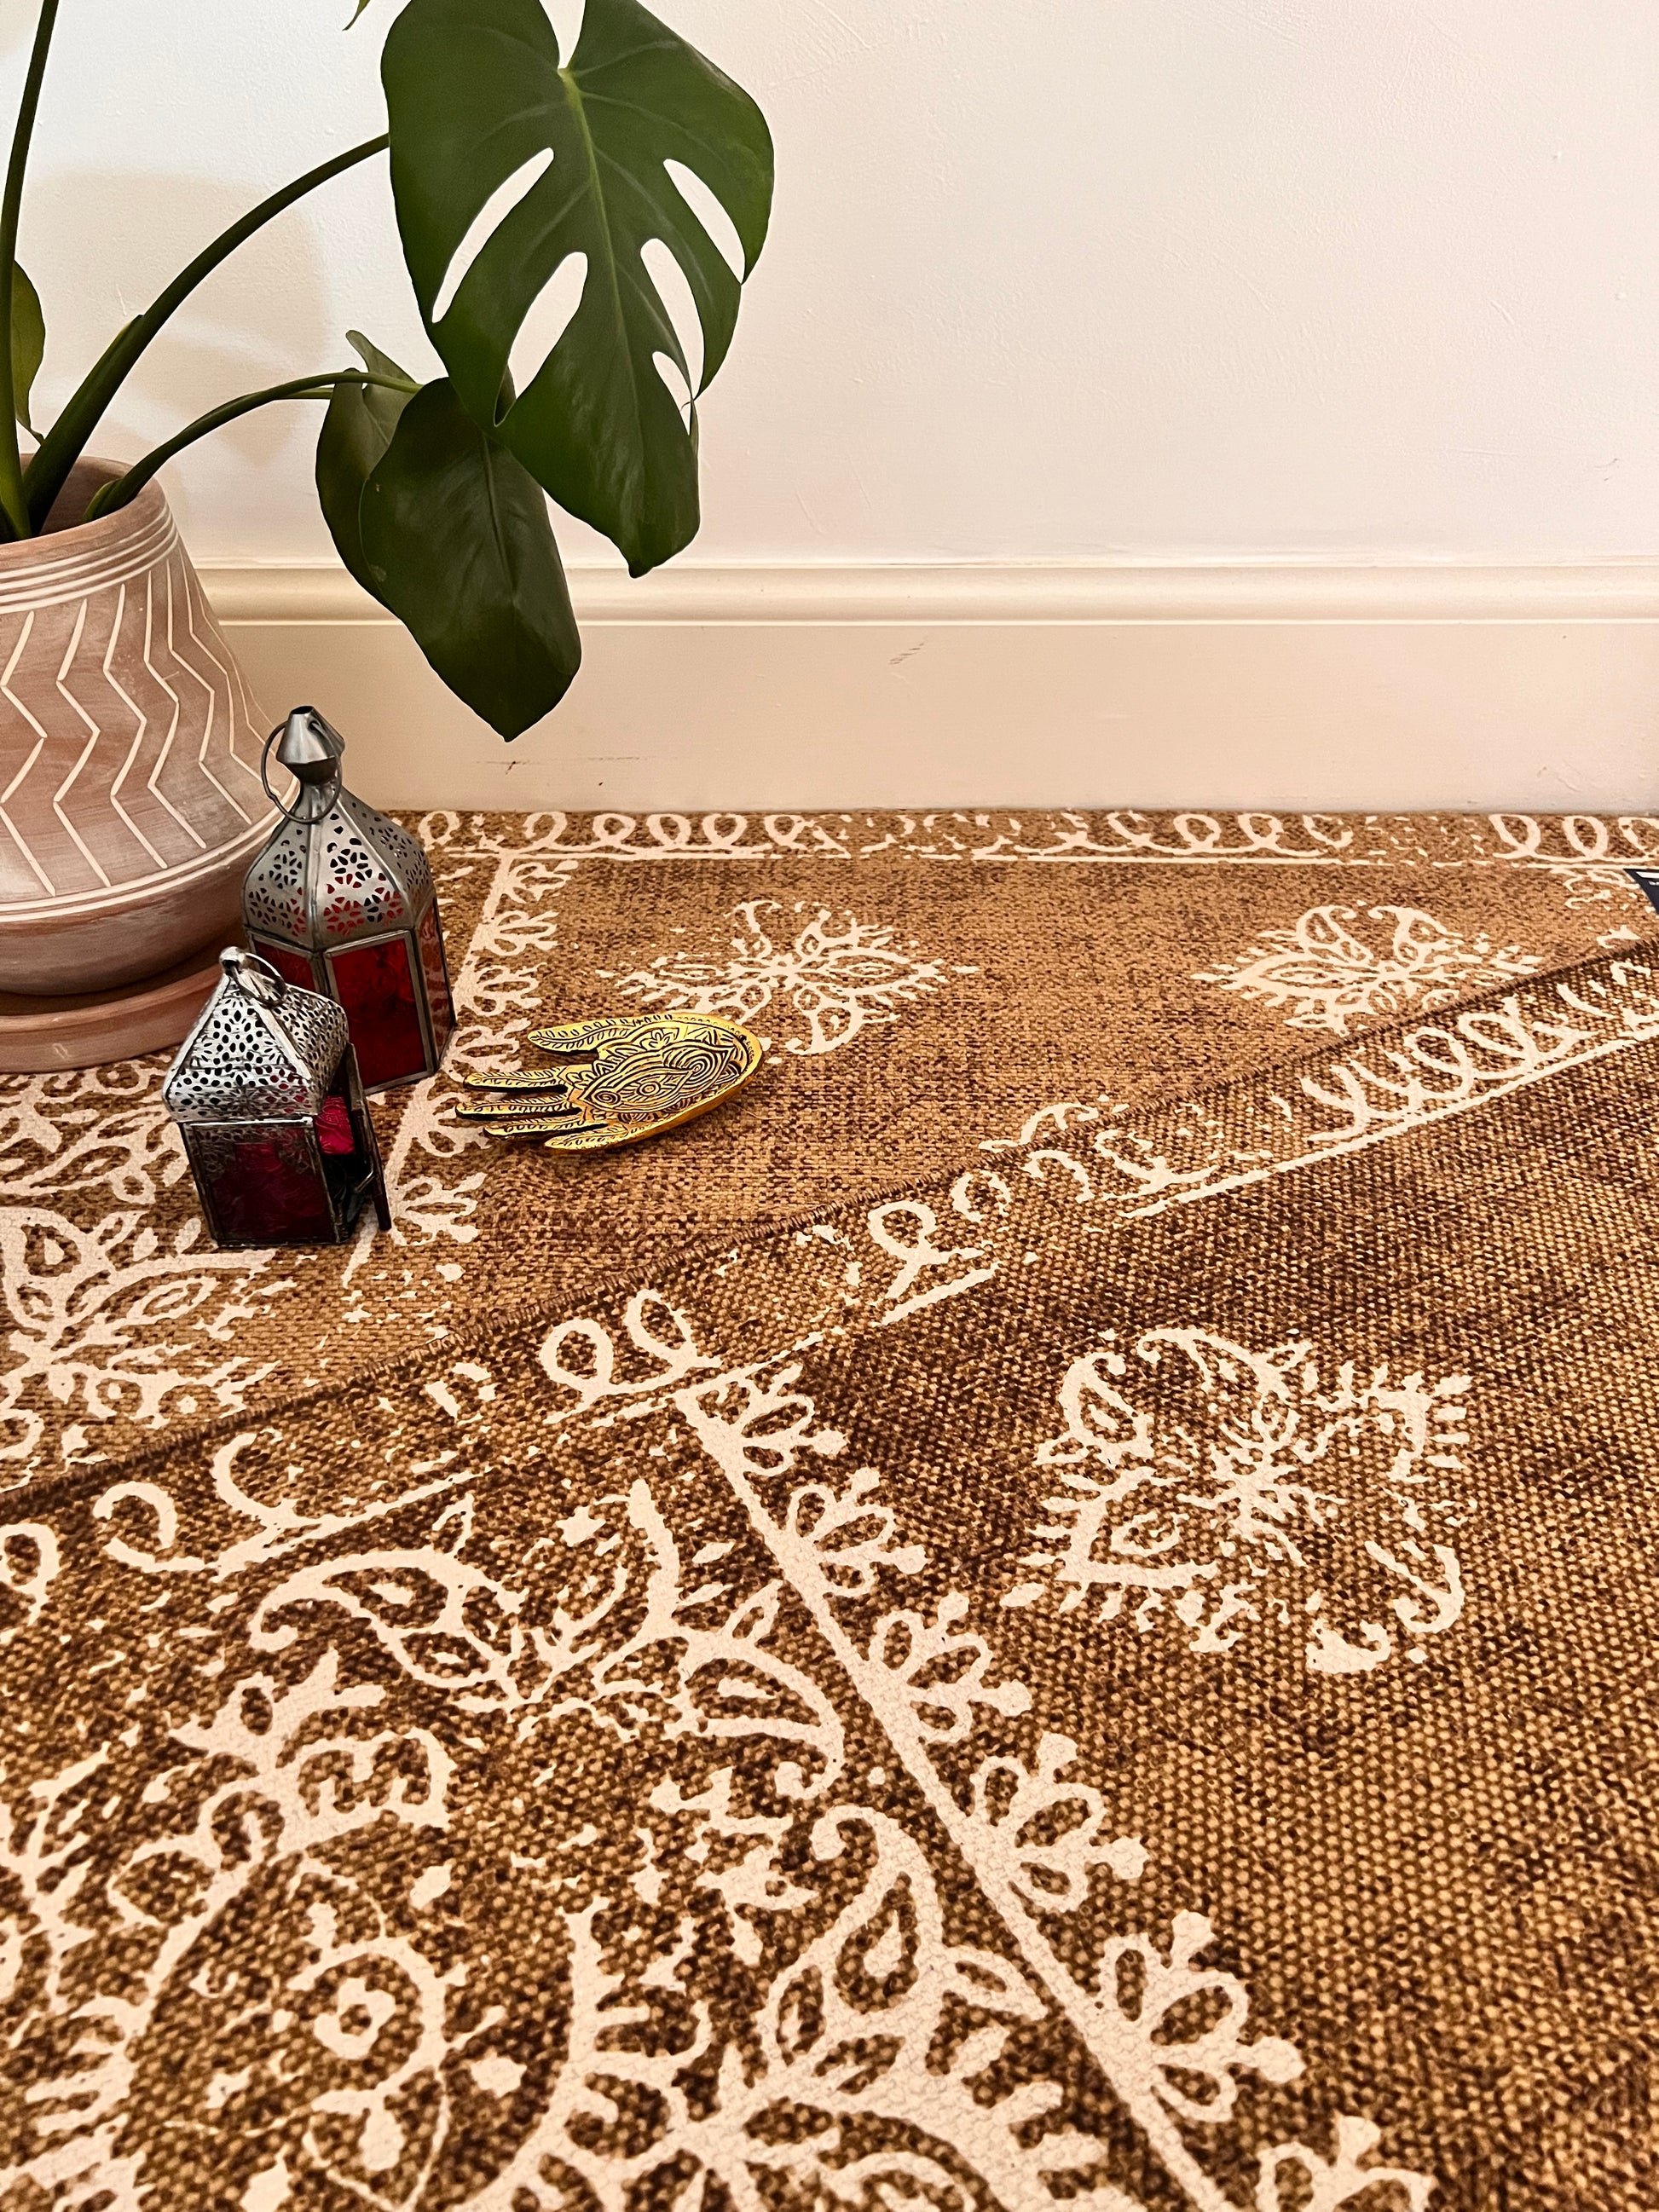 Handmade fair trade printed boho rug